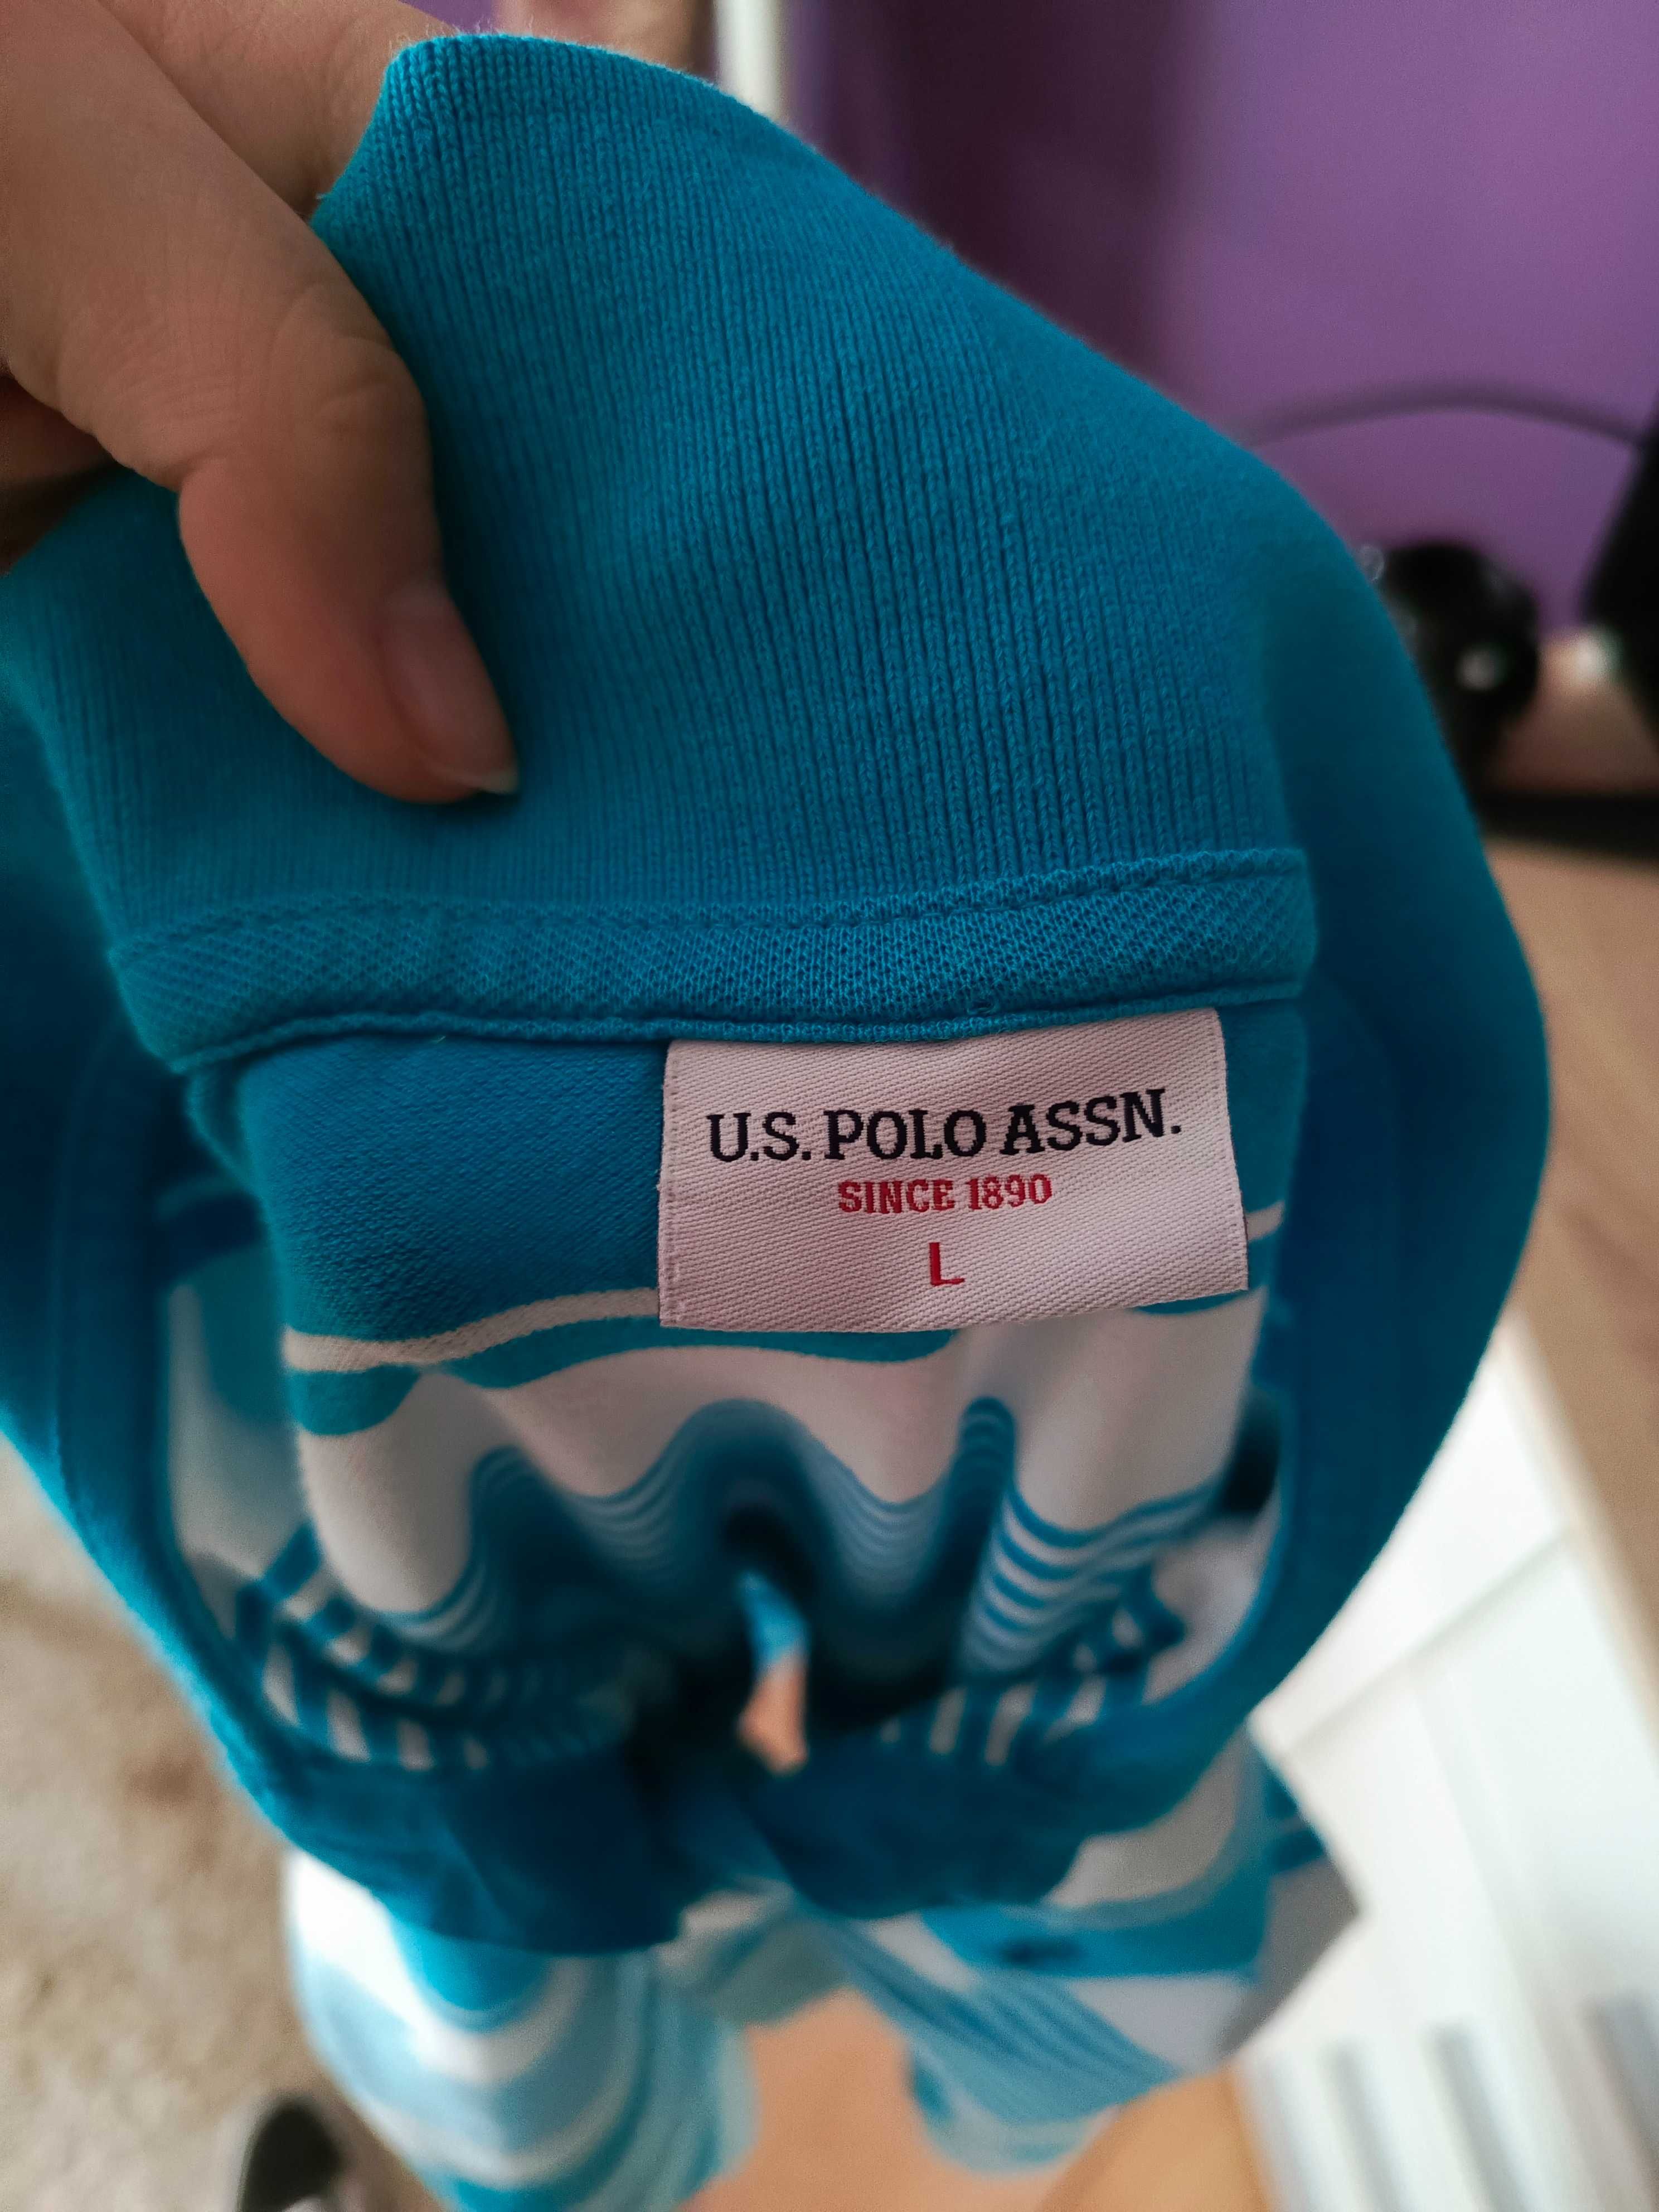 Damska koszulka U.S Polo ASSN. w rozmiarze L